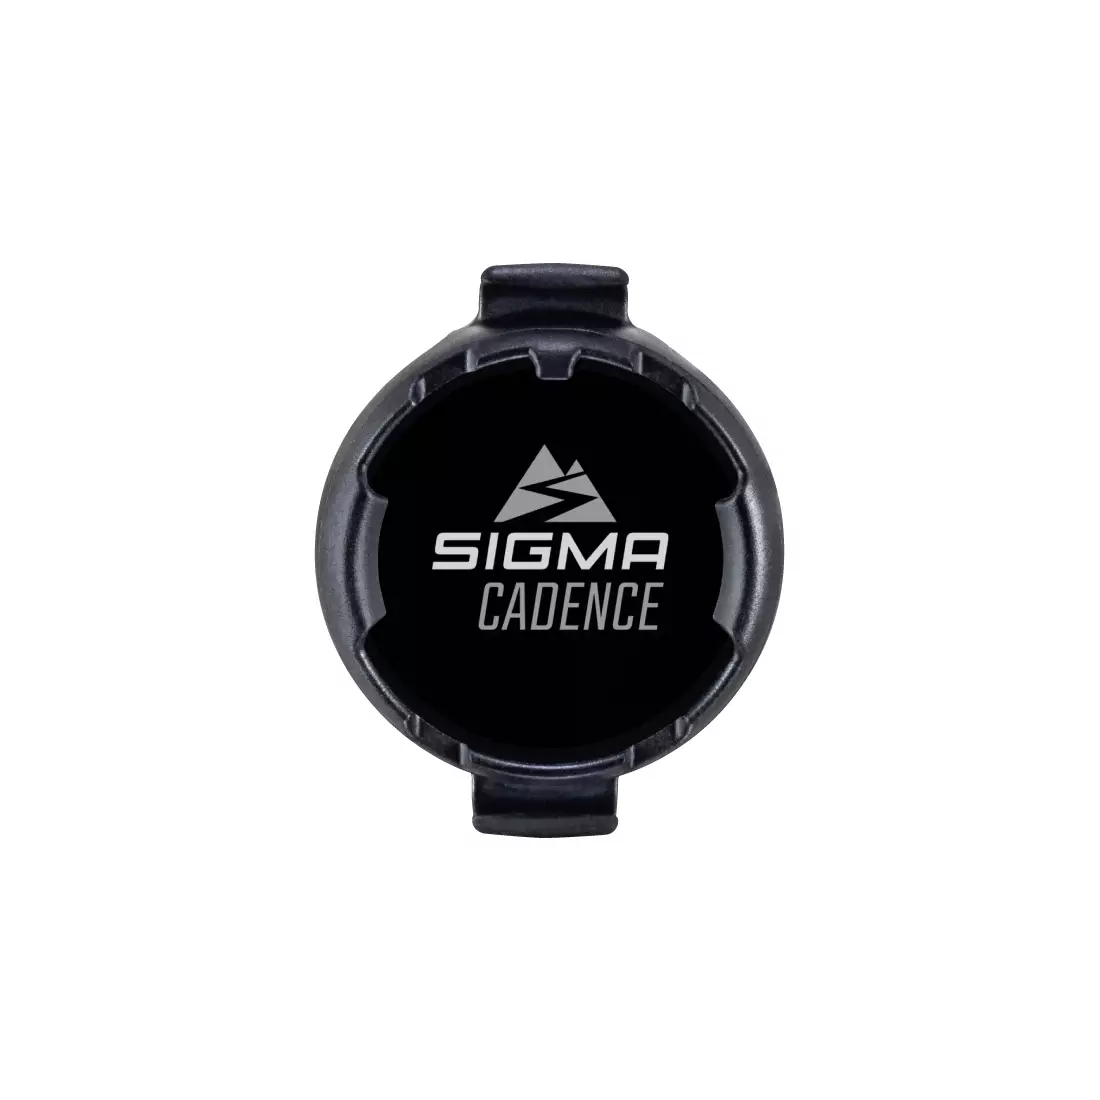 SIGMA pedálfordulat érzékelő DUO MAGNETLESS rox SIG-20336